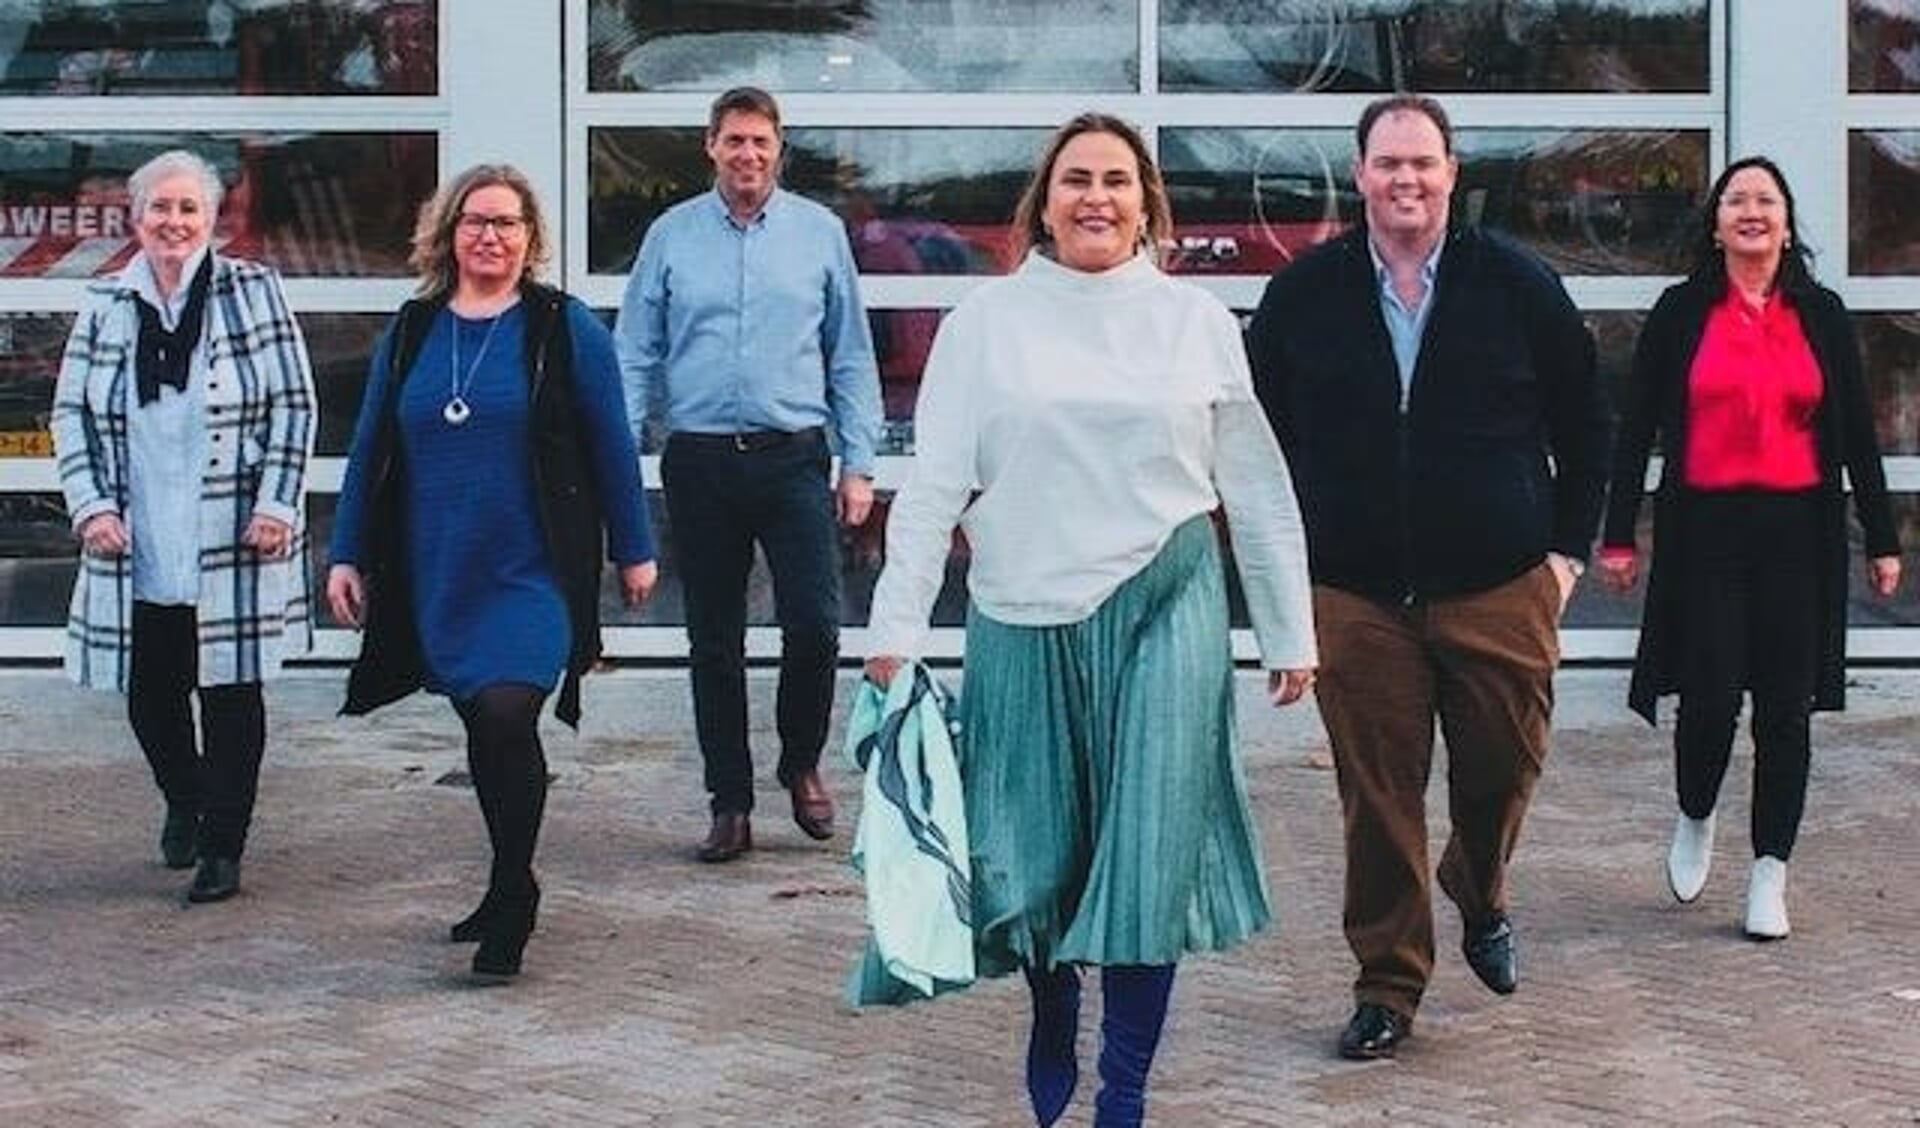 • De kandidaten van de VVD in Papendrecht, met Sophia de Keizer in het midden vooraan en Dirk Stouthart rechts naast haar.